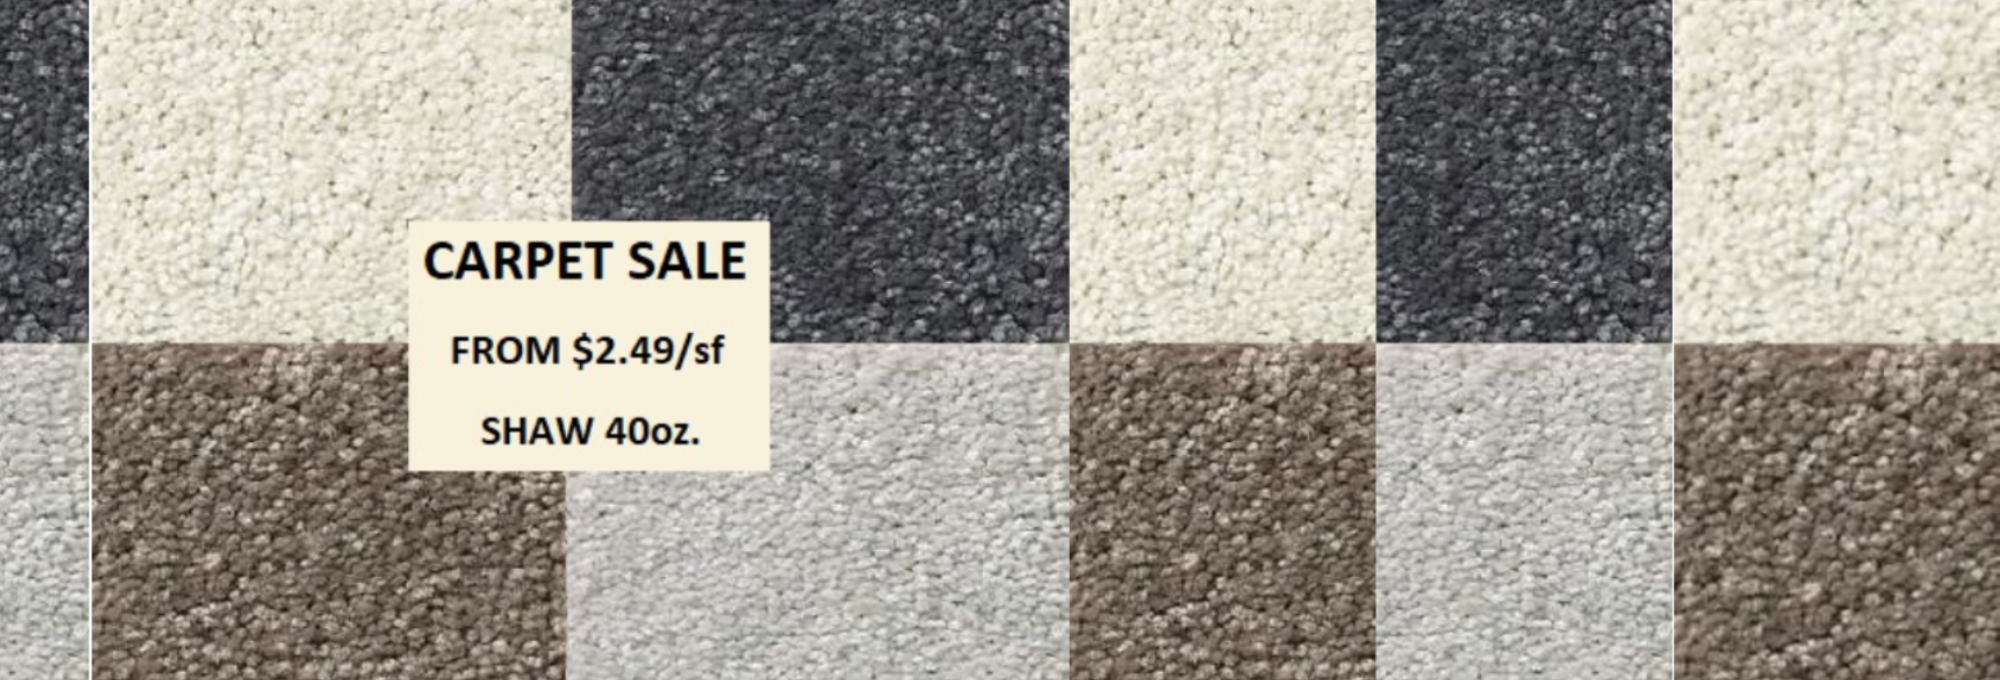 Carpet-Promotions-Sales-Banner-2000x680